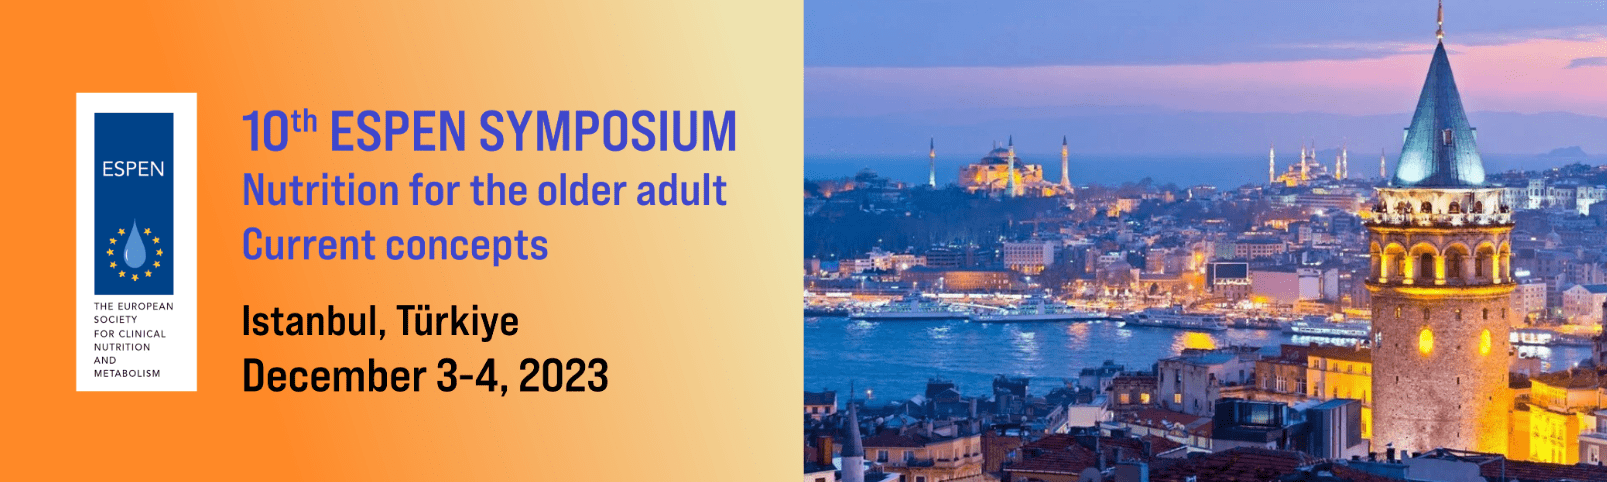 10th ESPEN Symposium